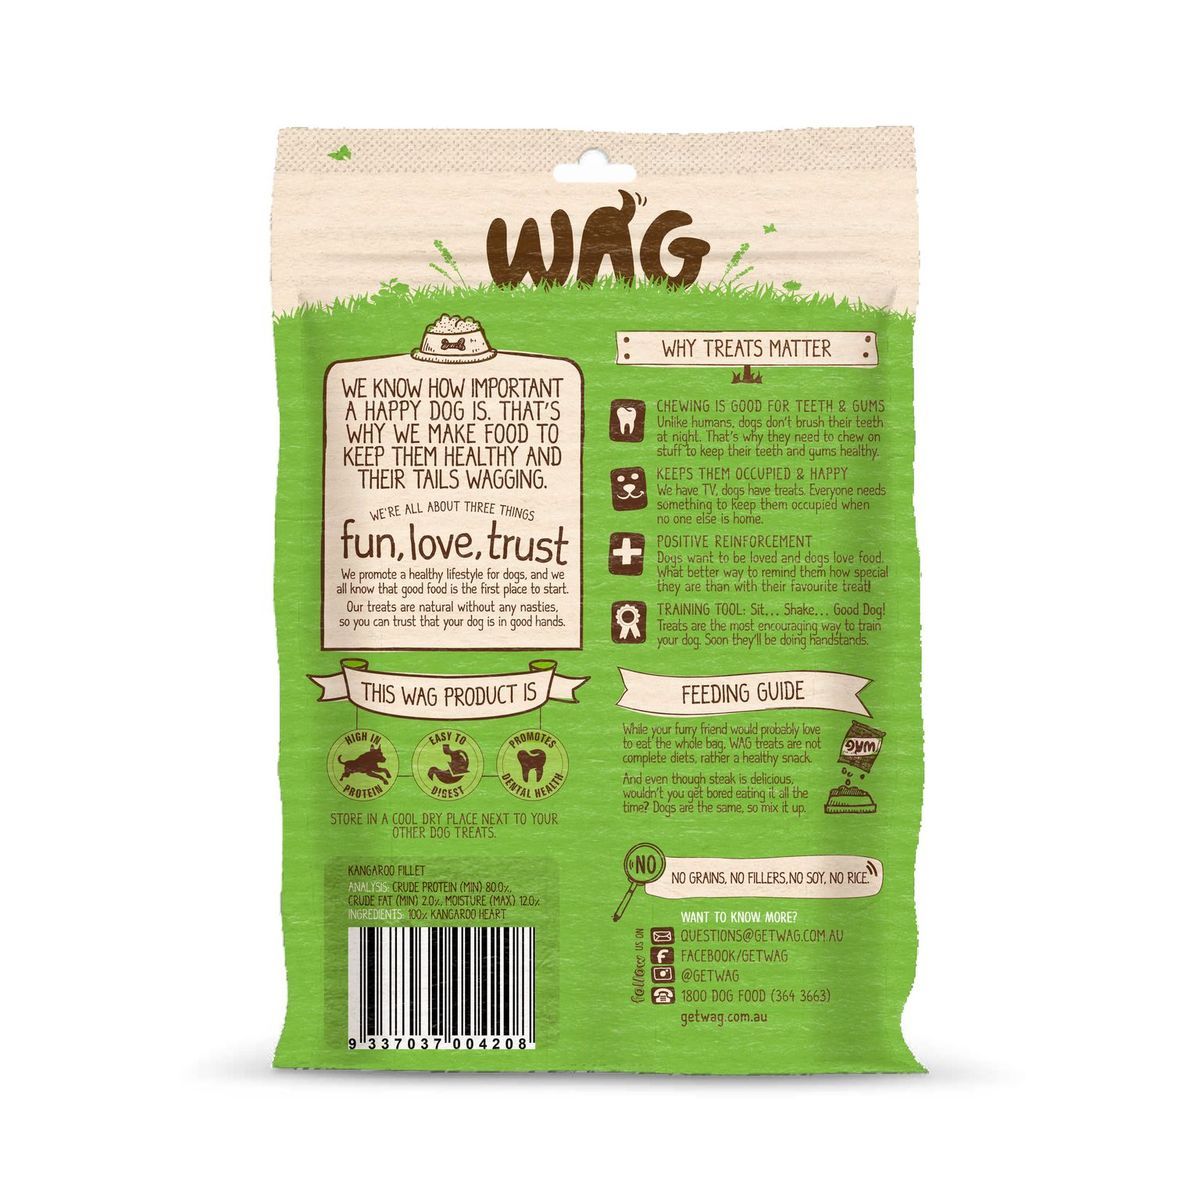 WAG Kangaroo Fillet 200g - Woonona Petfood & Produce